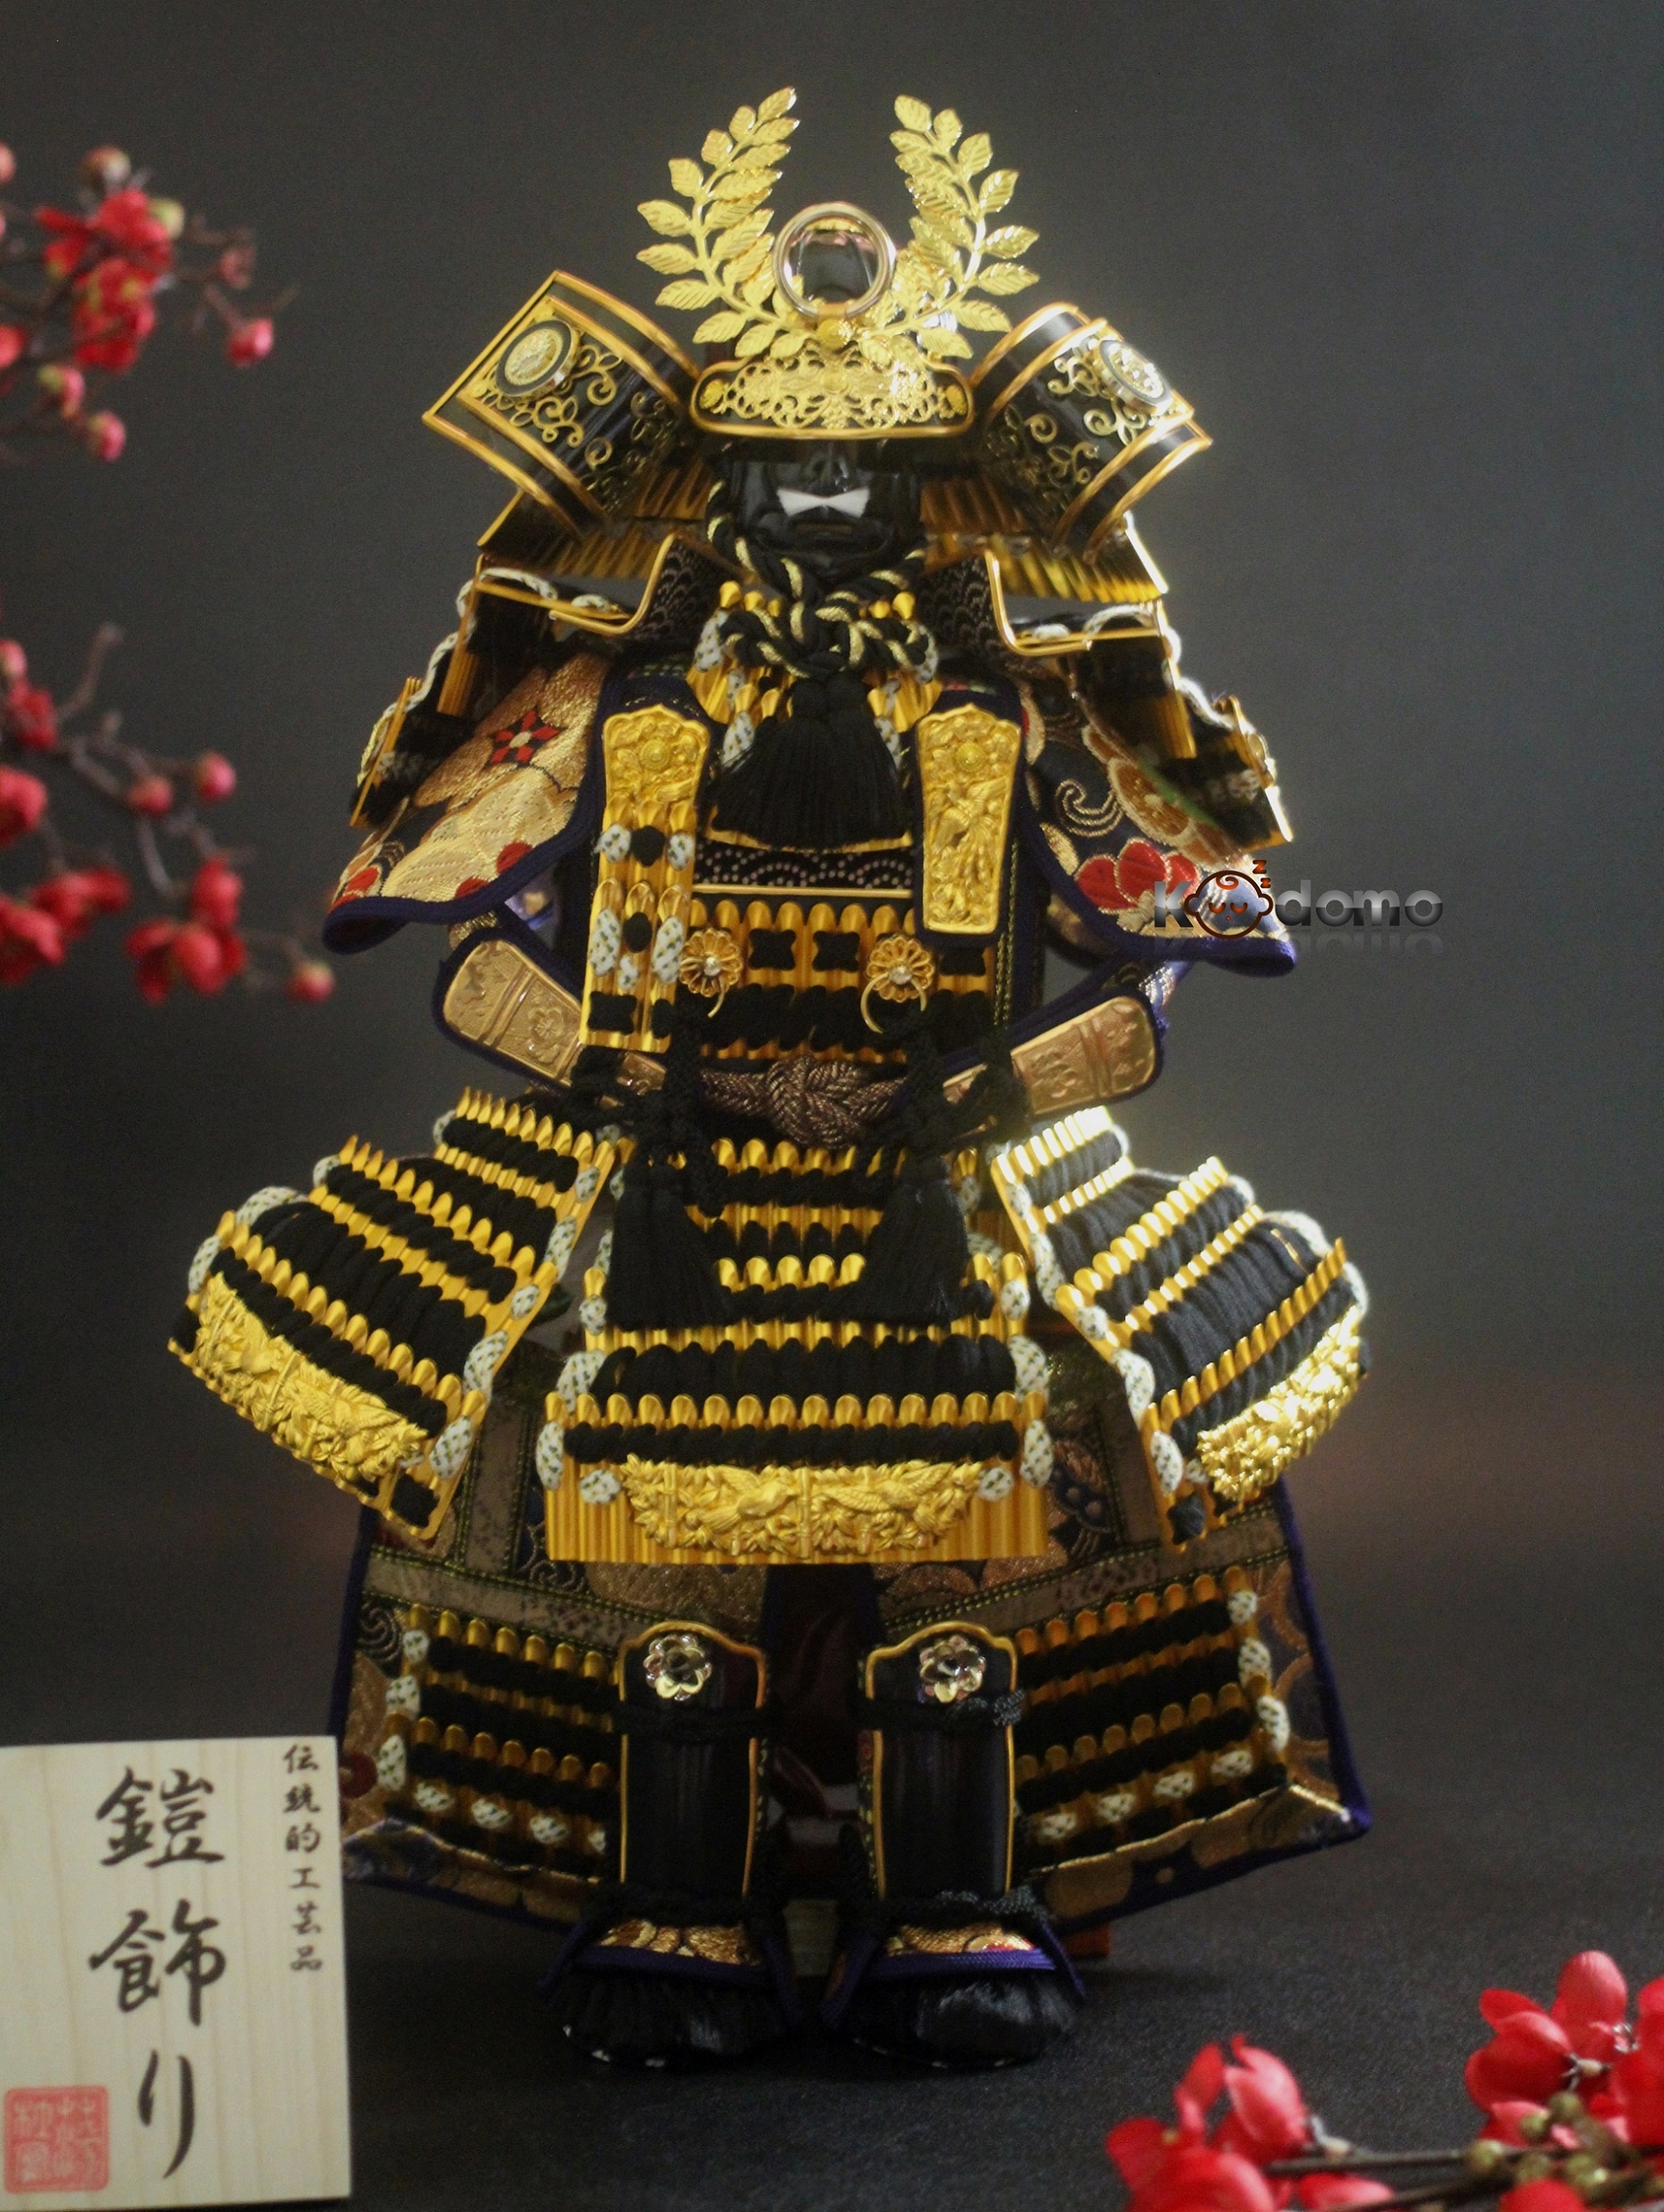 Với thiết kế áo giáp samurai cực kỳ ấn tượng và độc đáo, các tín đồ mê anime sẽ không thể bỏ qua bức ảnh về áo giáp samurai này. Nhấp chuột và chiêm ngưỡng nhé!